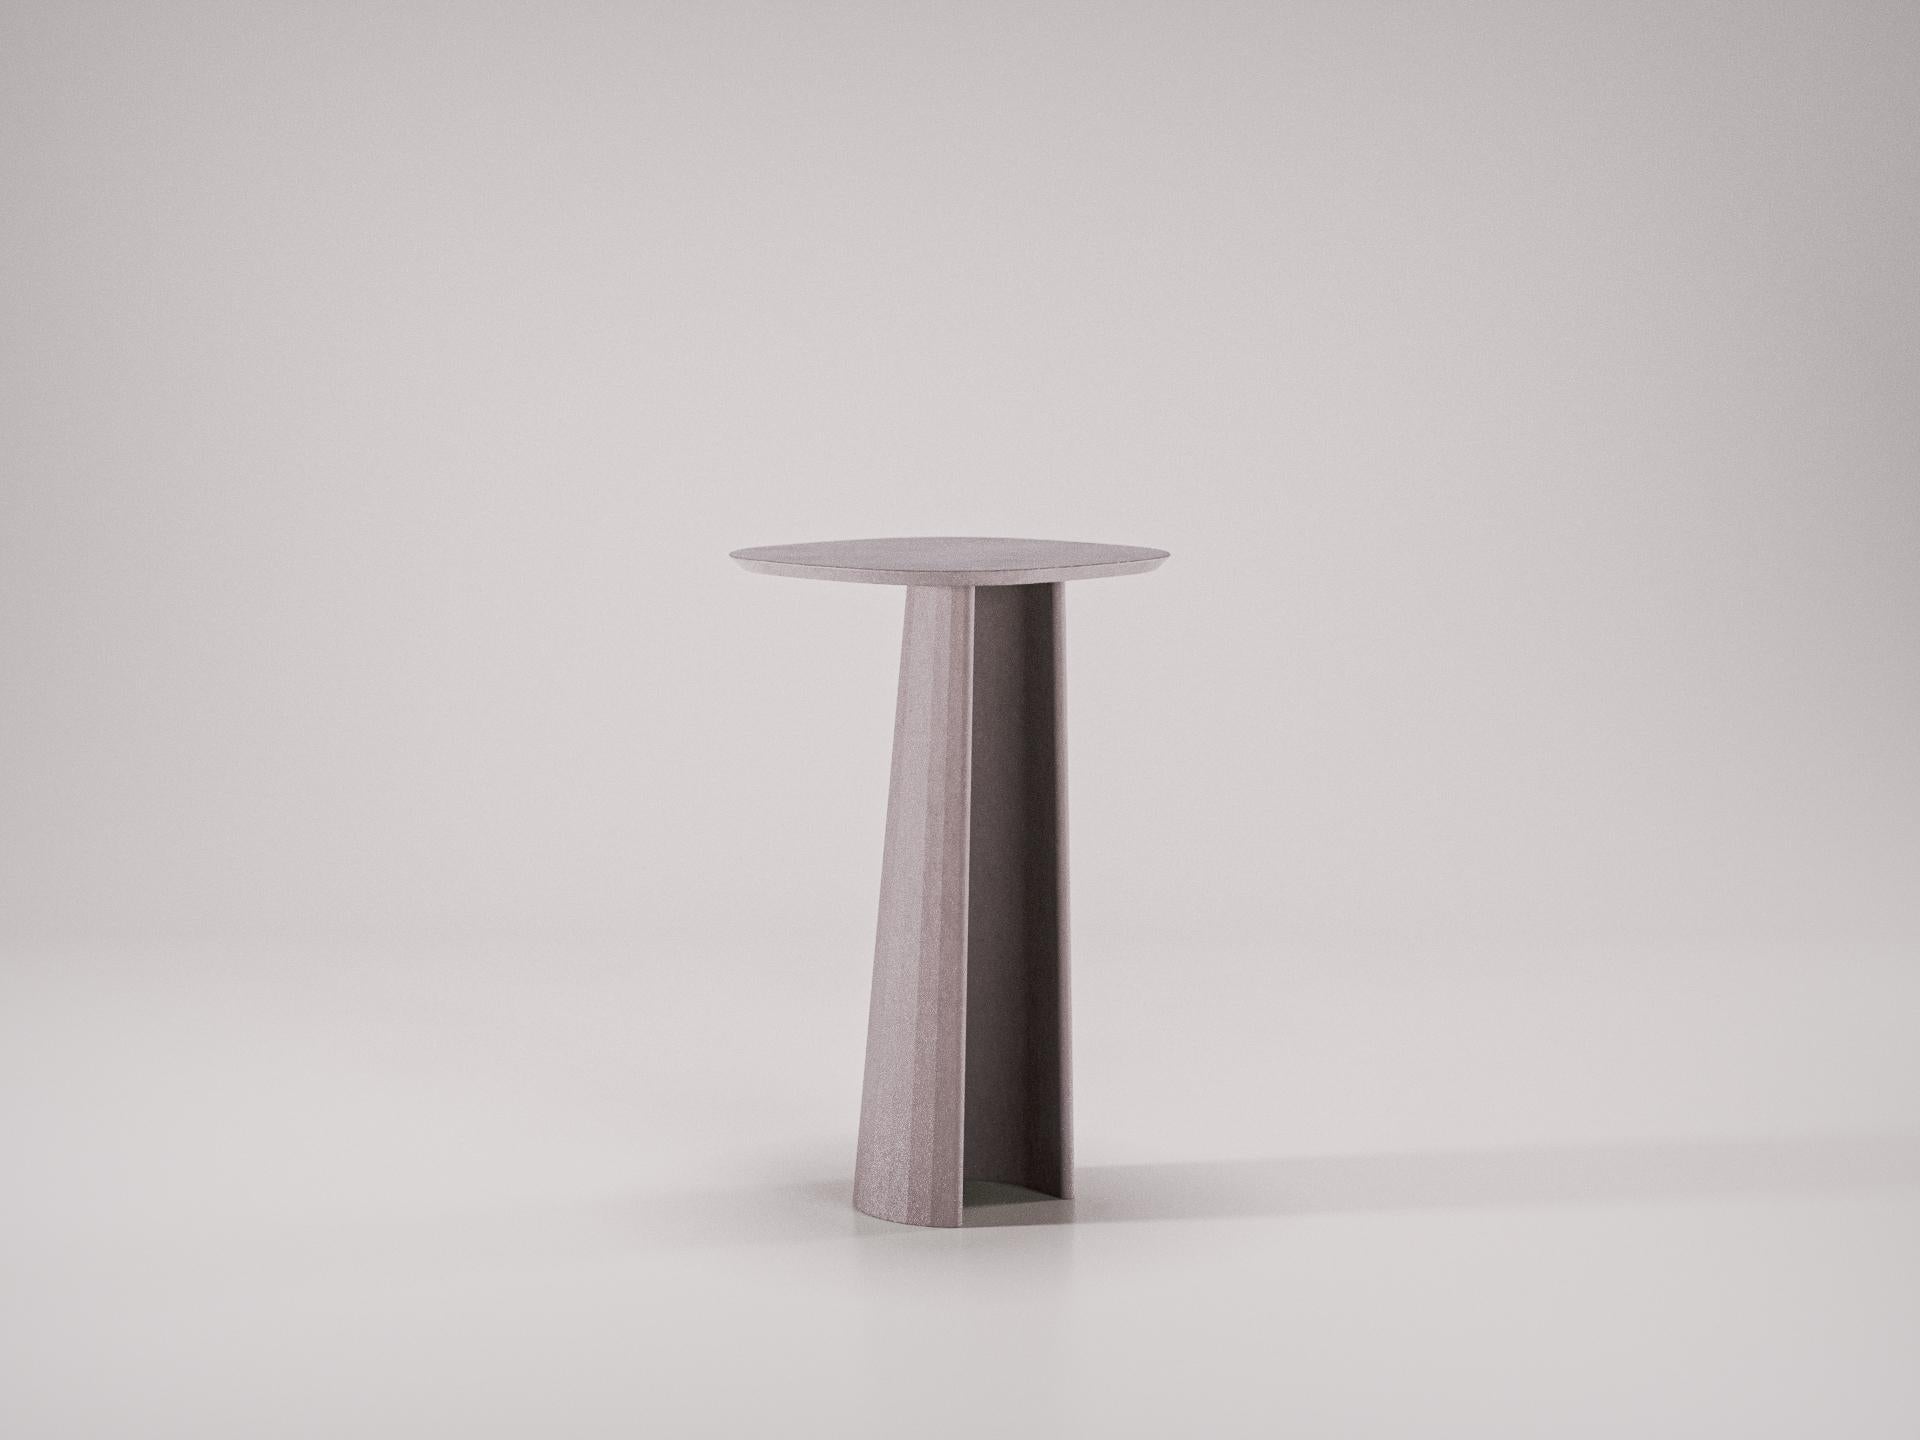 Studio Irvine for F&C Fusto Concrete Pedestal h82 Chocolate Cement Handmade In New Condition For Sale In Rome, Lazio